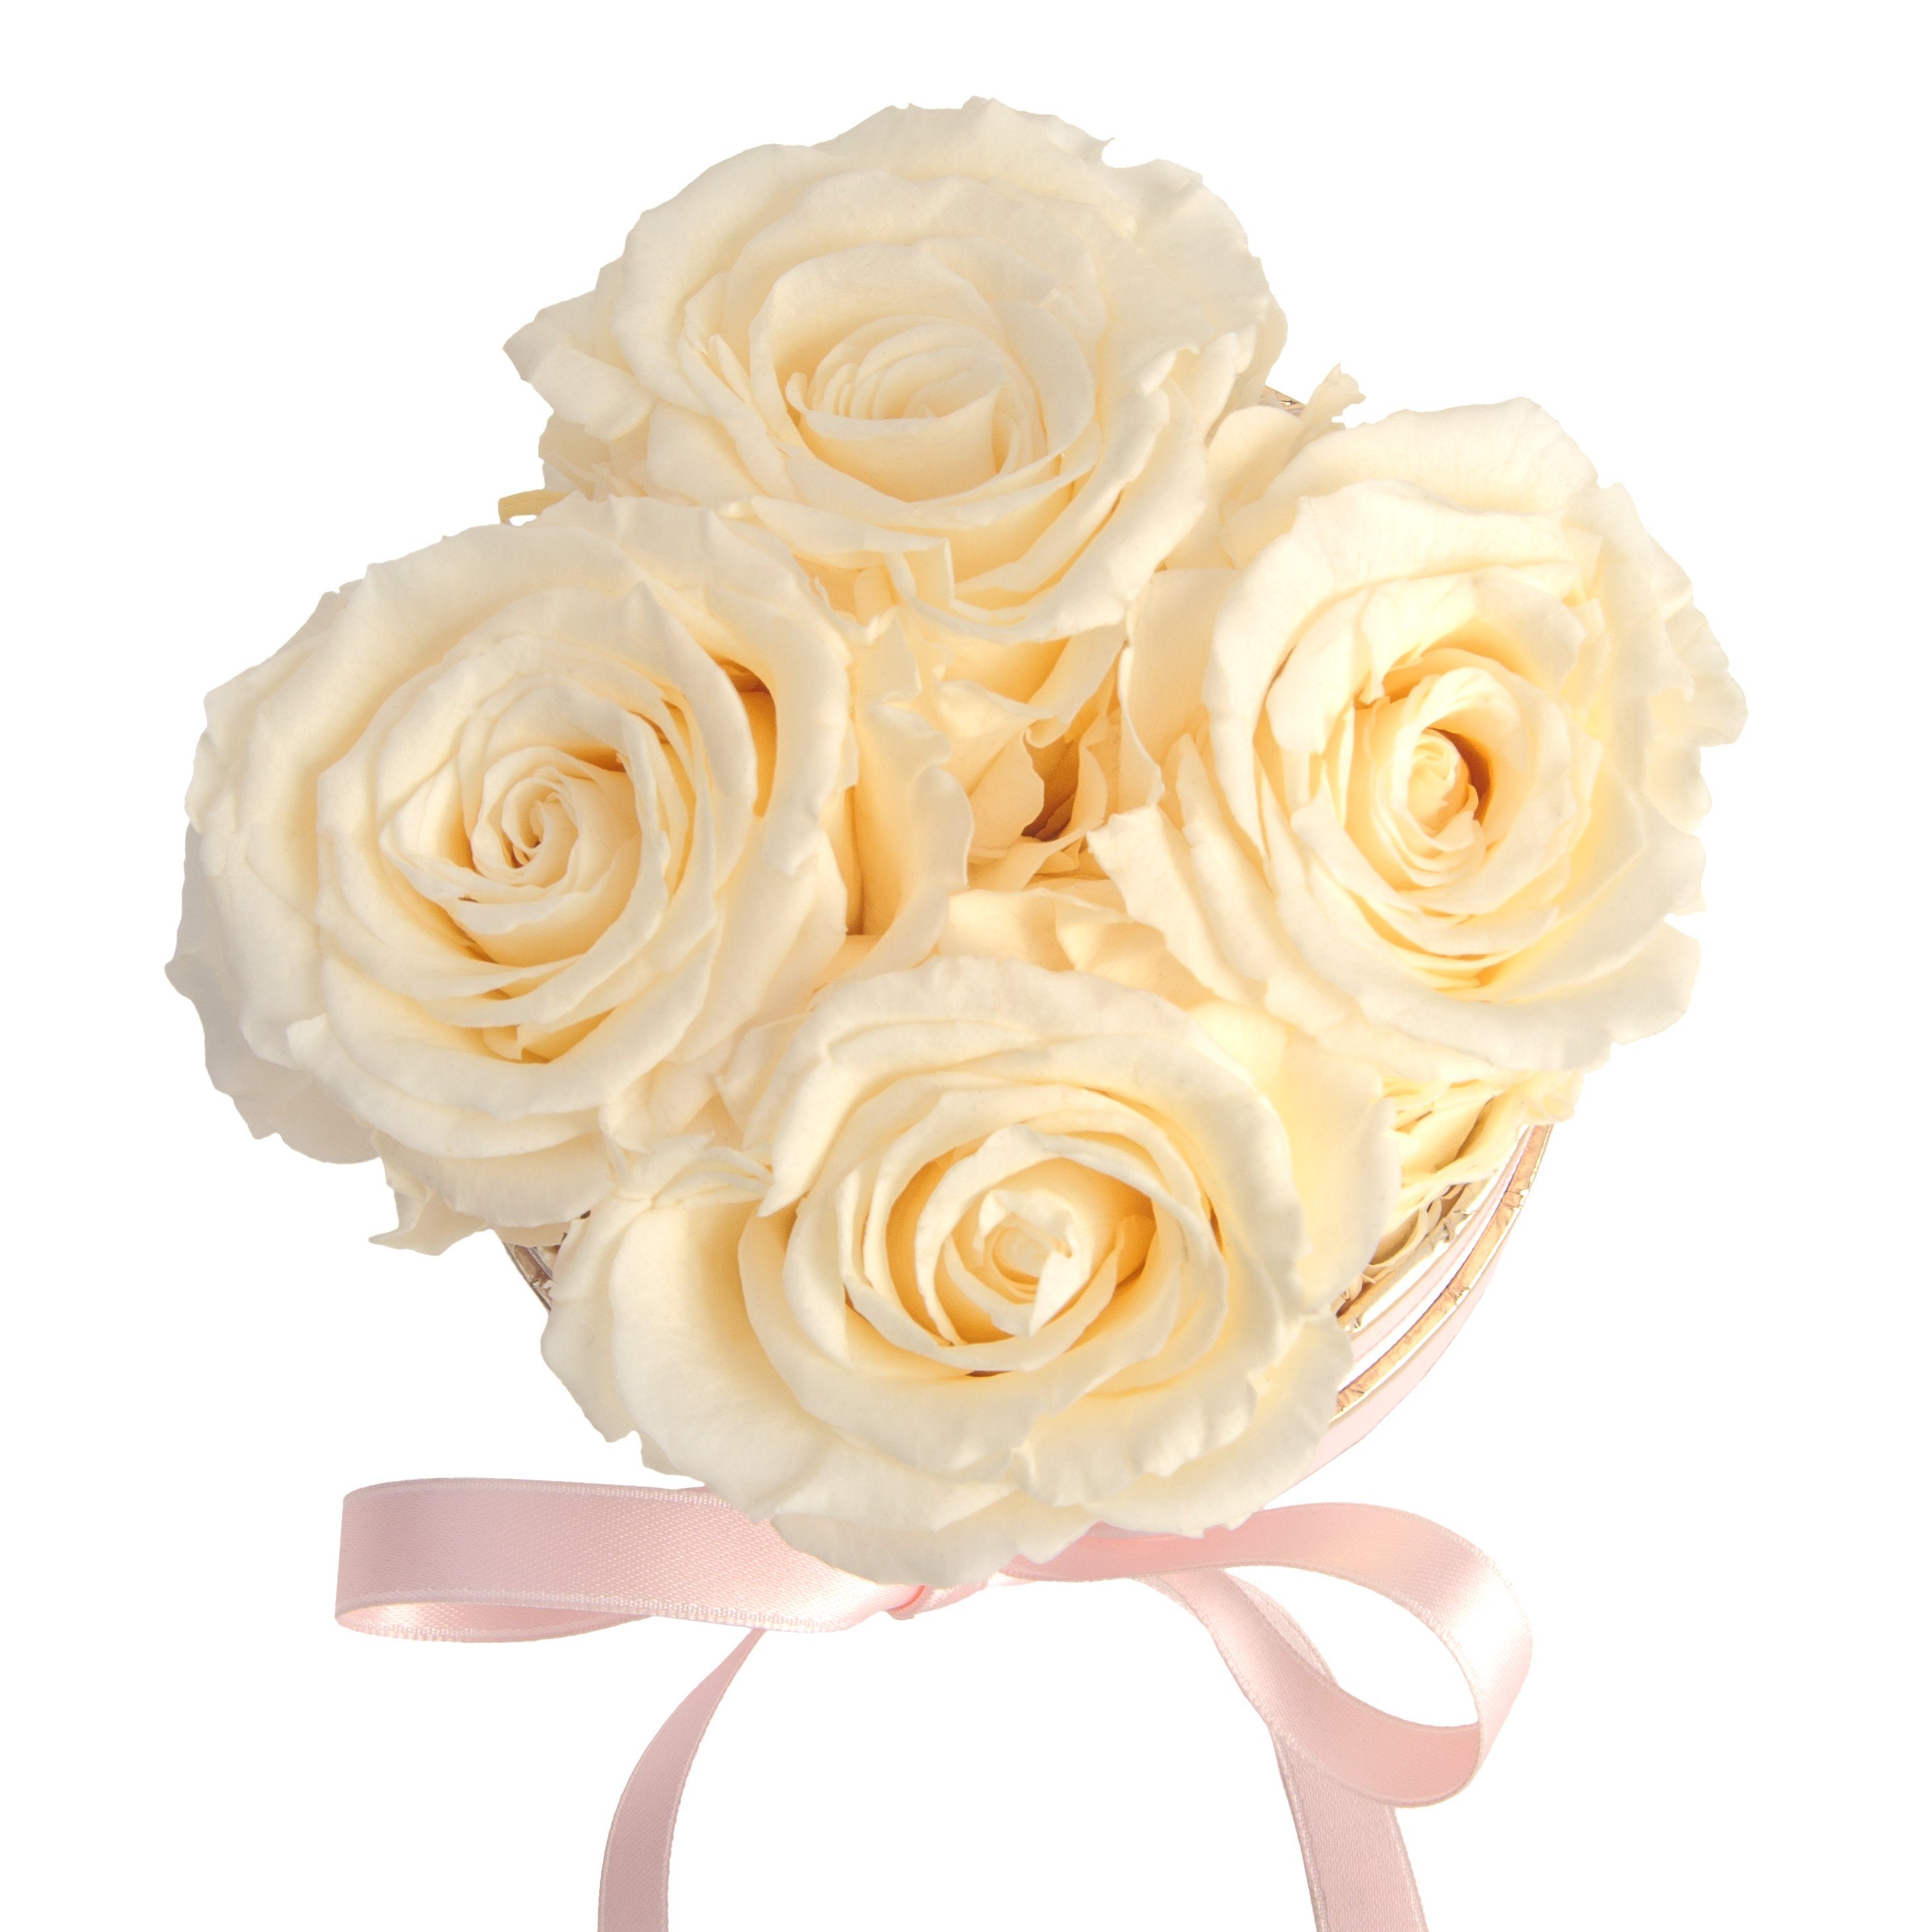 Kunstblume Infinity Rosenbox rosa konservierte Geschenk Heidelberg, Rosen Frauen cm, rund konservierte für Rosen 4 Champagner Rose, 10 Höhe echte ROSEMARIE SCHULZ